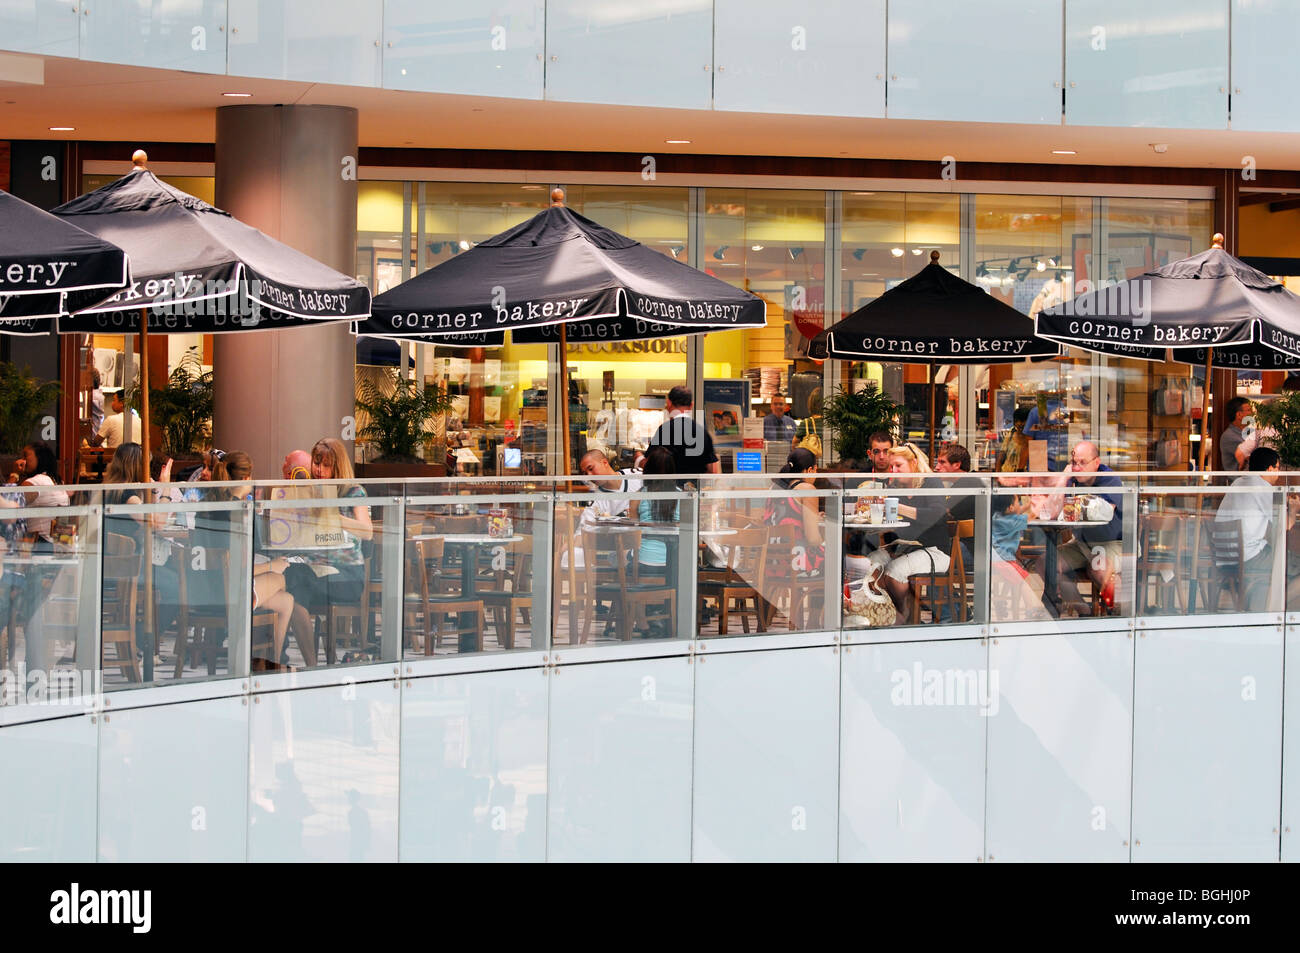 Galleria shopping mall, Dallas, Texas, USA Stock Photo